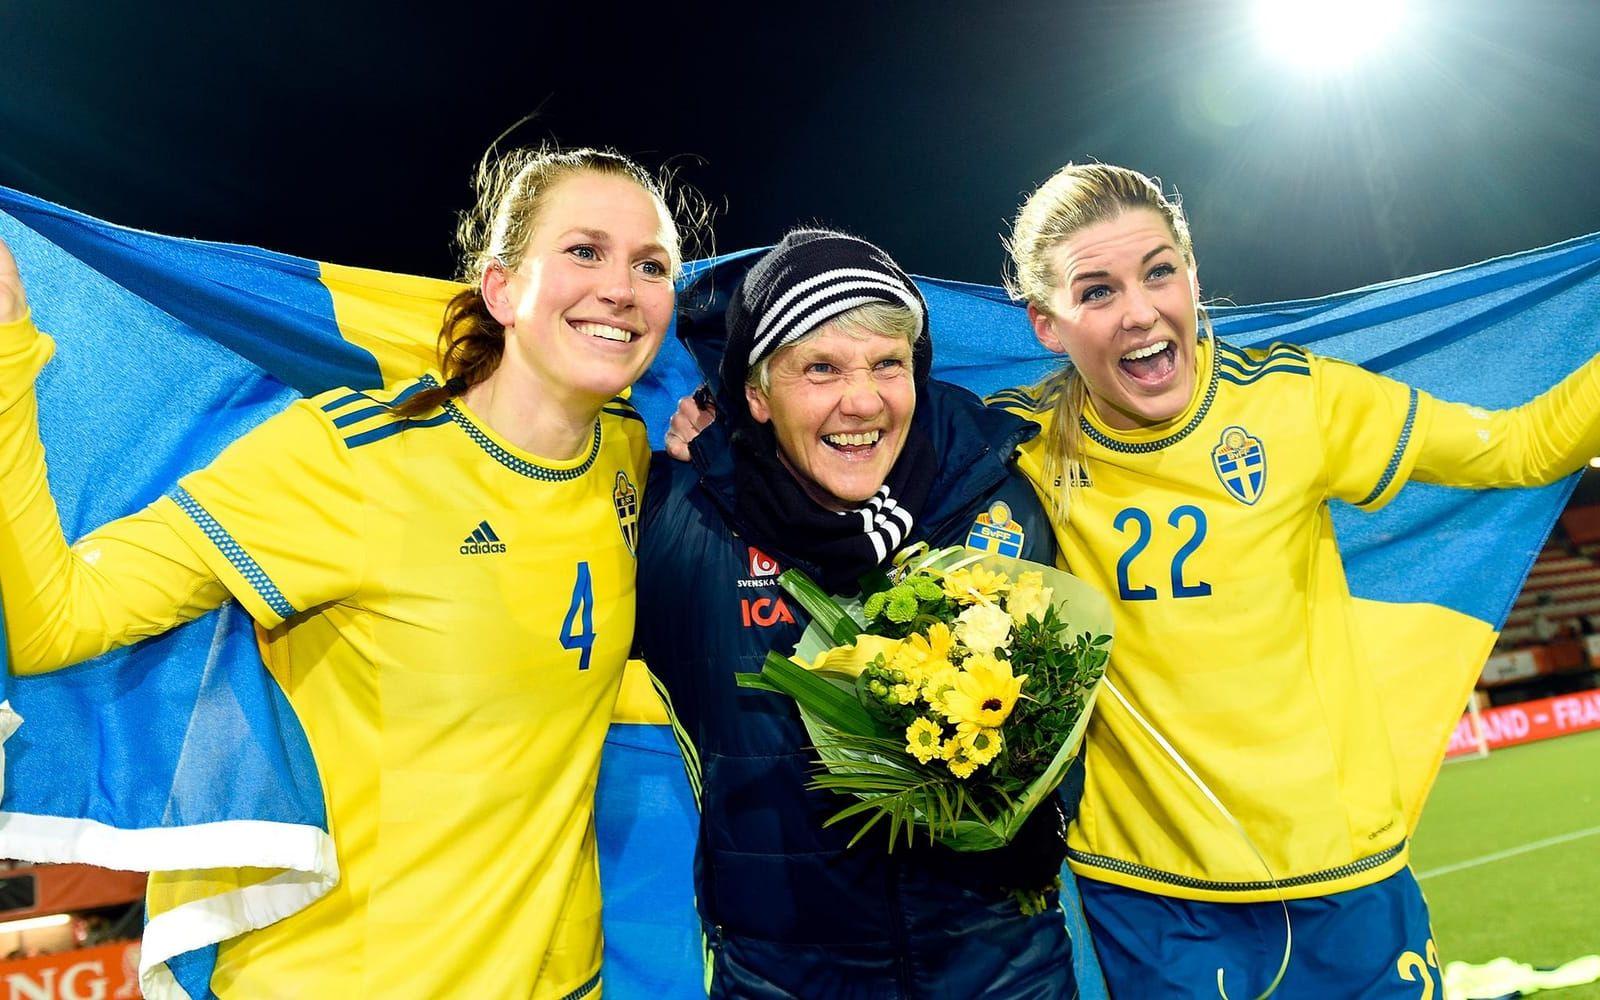 9 mars 2016: Stort segerjubel sedan Sverige kvalificerat sig för OS i Rio. Under en intensiv vecka slår Sverige Schweiz och Norge och kryssar dramatiskt mot Nederländerna, vilket är tillräckligt för att Sundhage och kompani ska kunna boka flygbiljetterna till Brasilien. Foto: Bildbyrån